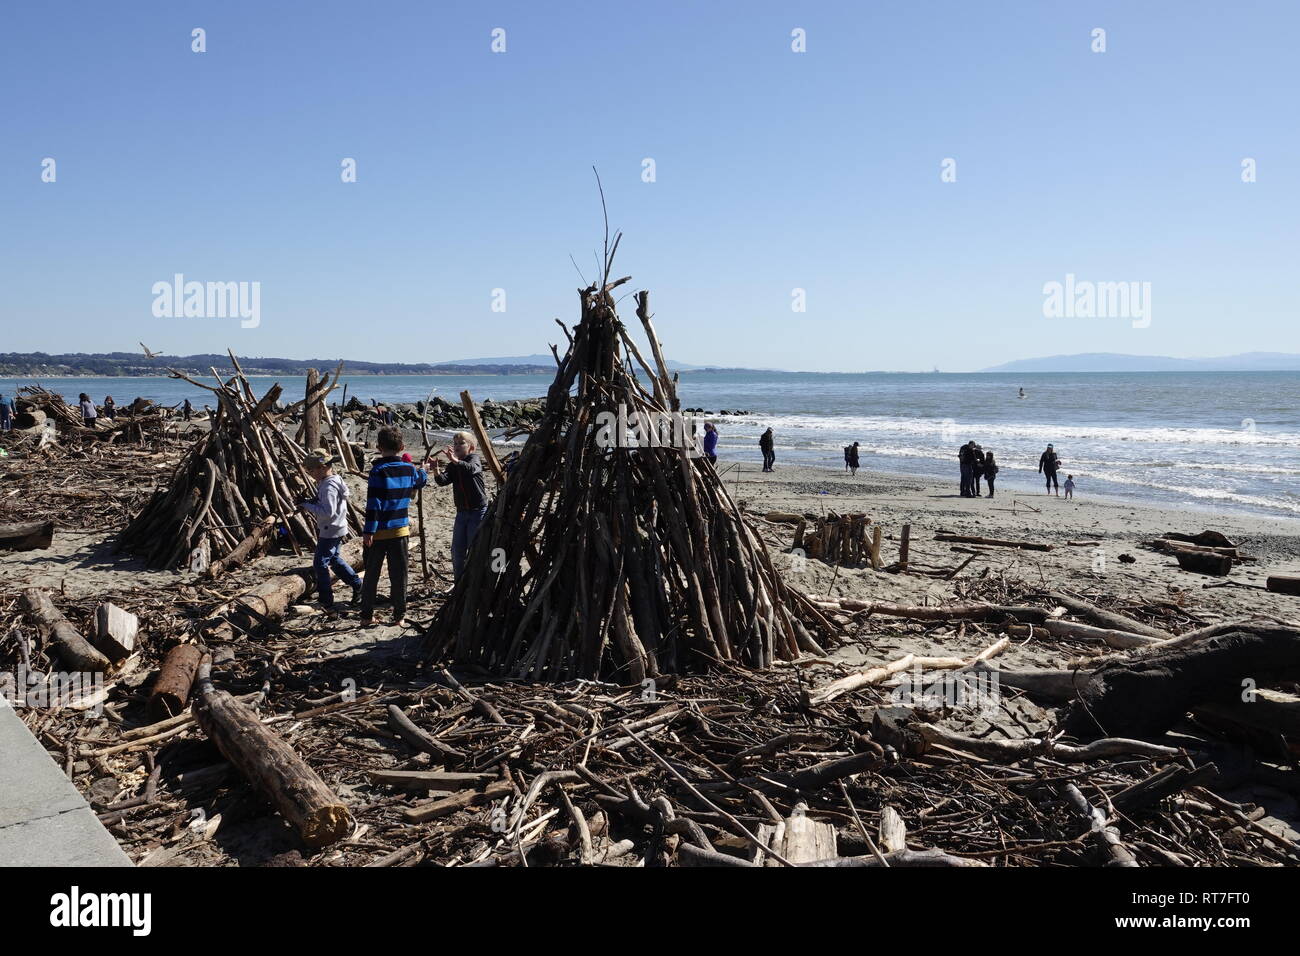 Capitola, California, Stati Uniti d'America 28 Febbraio 2019 - bambini locali ri-organizzare il driftwood e detriti vari lavato fino sulla spiaggia città dopo l'ampia tempeste che hanno colpito la California questa settimana. Credito: Motofoto/Alamy Live News Foto Stock